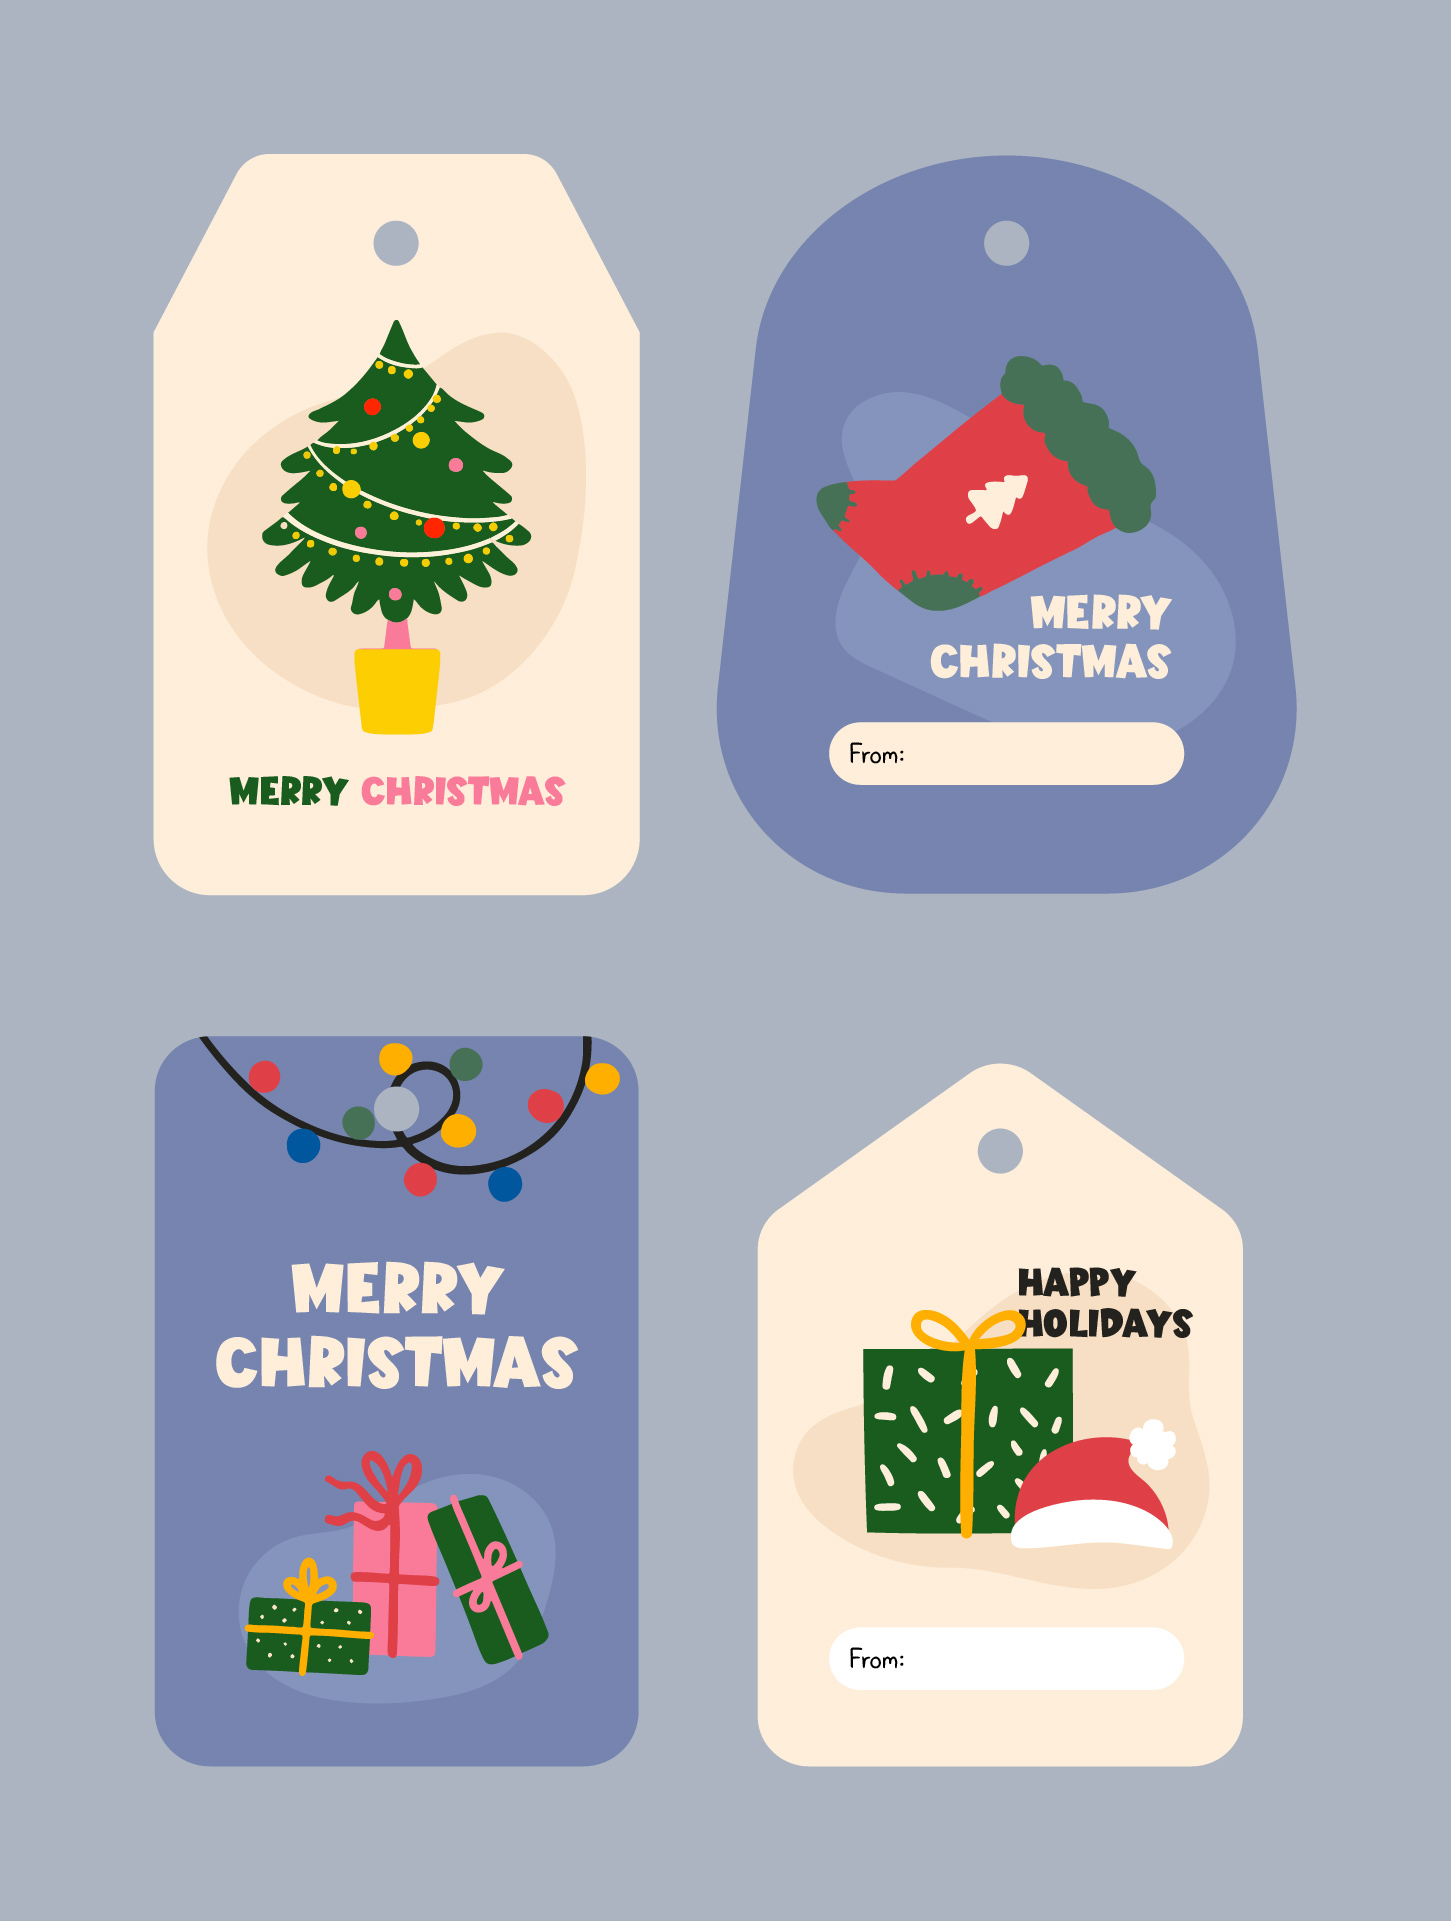 Printable Christmas Gift Tags Templates